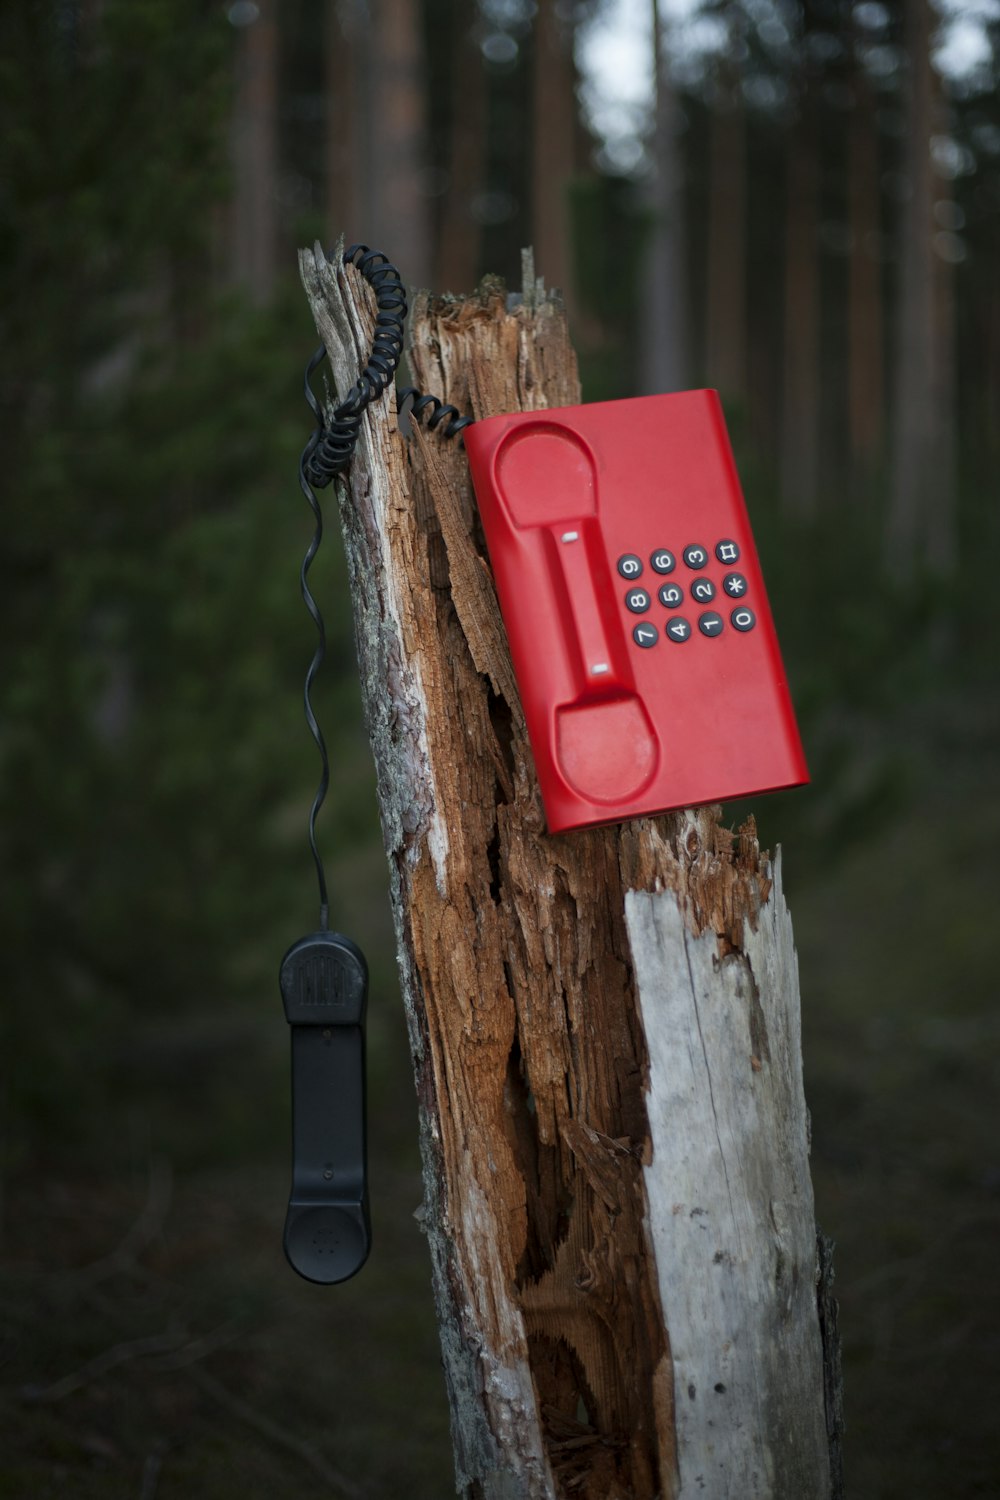 Telefono rosso sul tronco d'albero